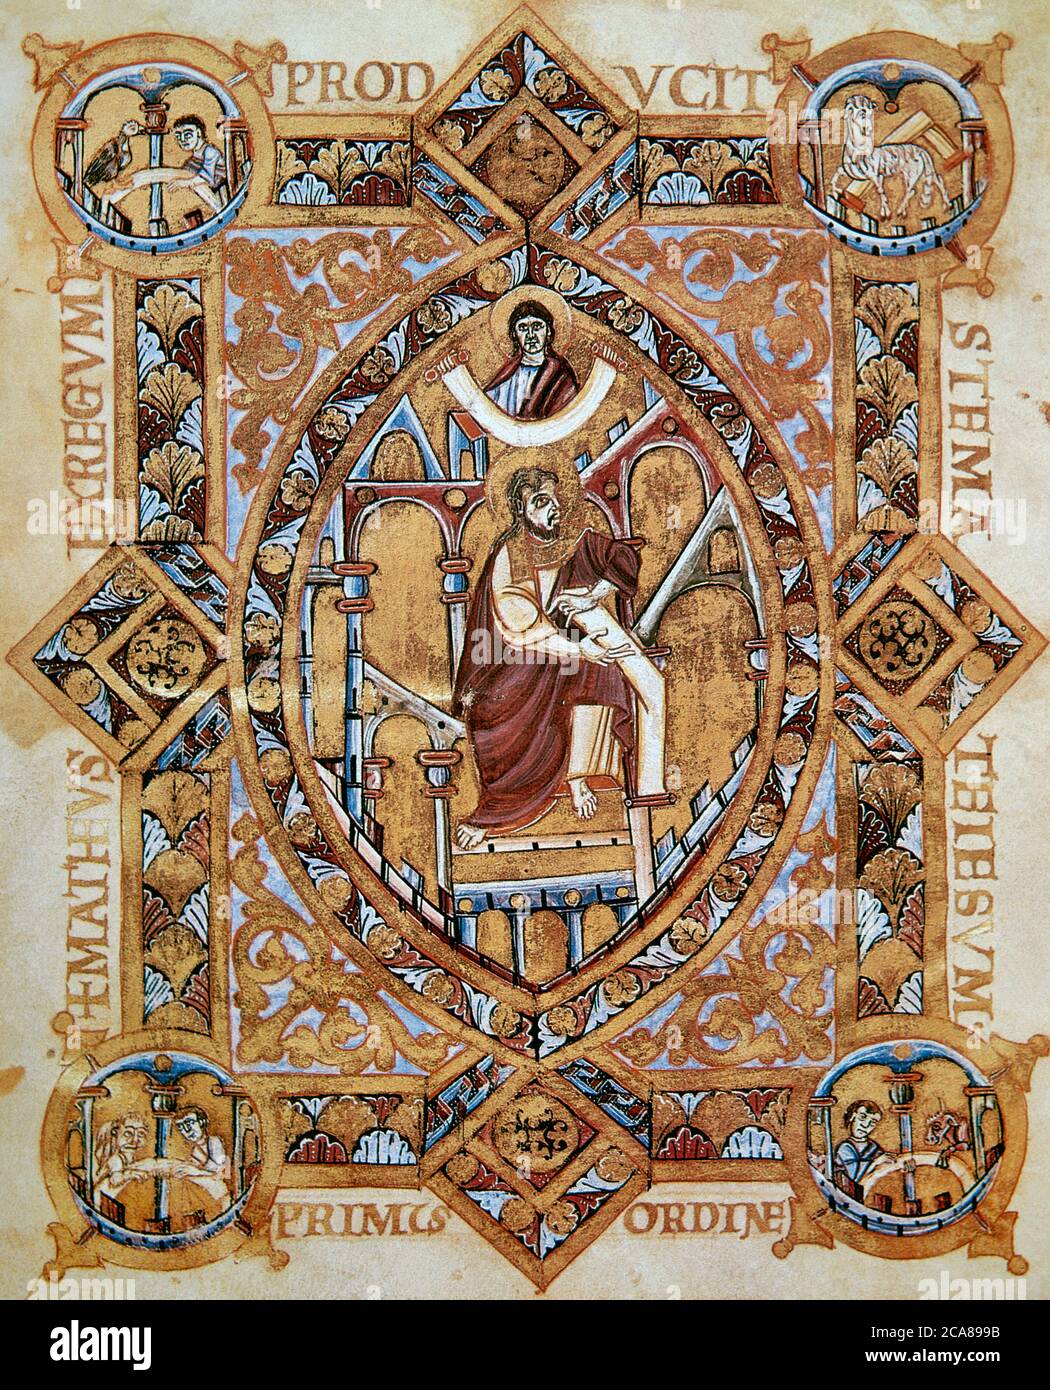 Der heilige Matthäus der Evangelist. Apostel und Autor des ersten Evangeliums. Miniatur aus dem Codex Evangeliary von Heinrich II. (1014-1022), die den heiligen Matthäus beim Schreiben des Evangeliums darstellt. Vatikanische Bibliothek. Stockfoto